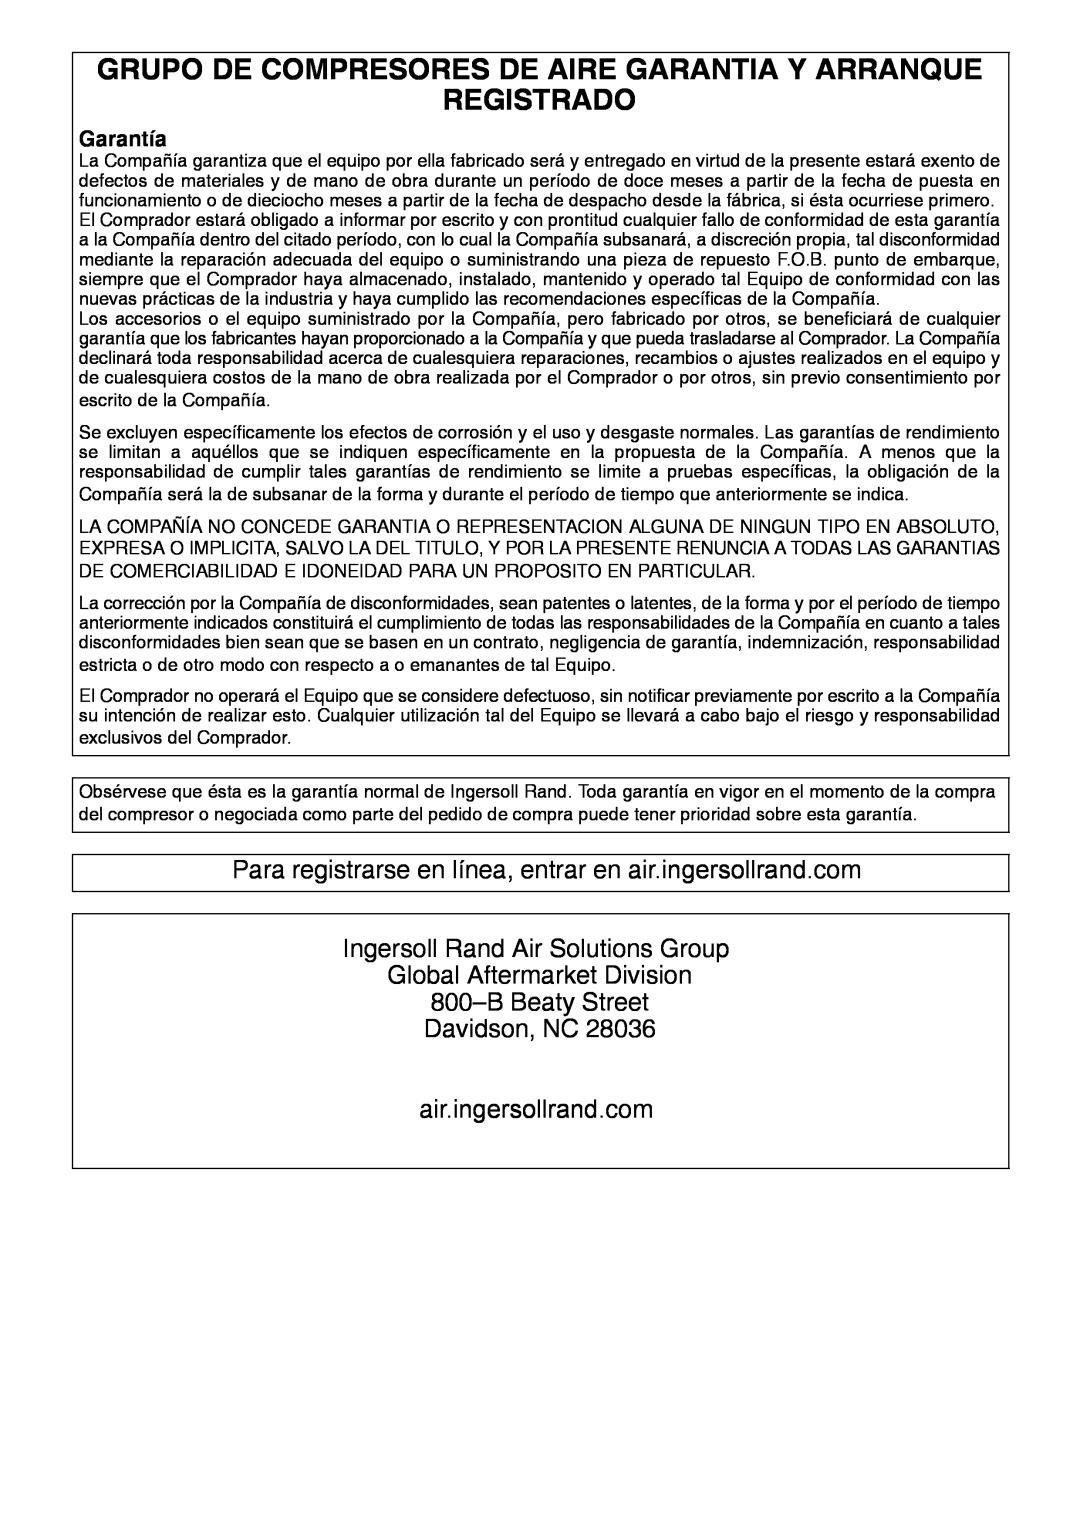 Ingersoll-Rand HXP50-PE manual Grupo De Compresores De Aire Garantia Y Arranque Registrado, air.ingersollrand.com, Garantía 